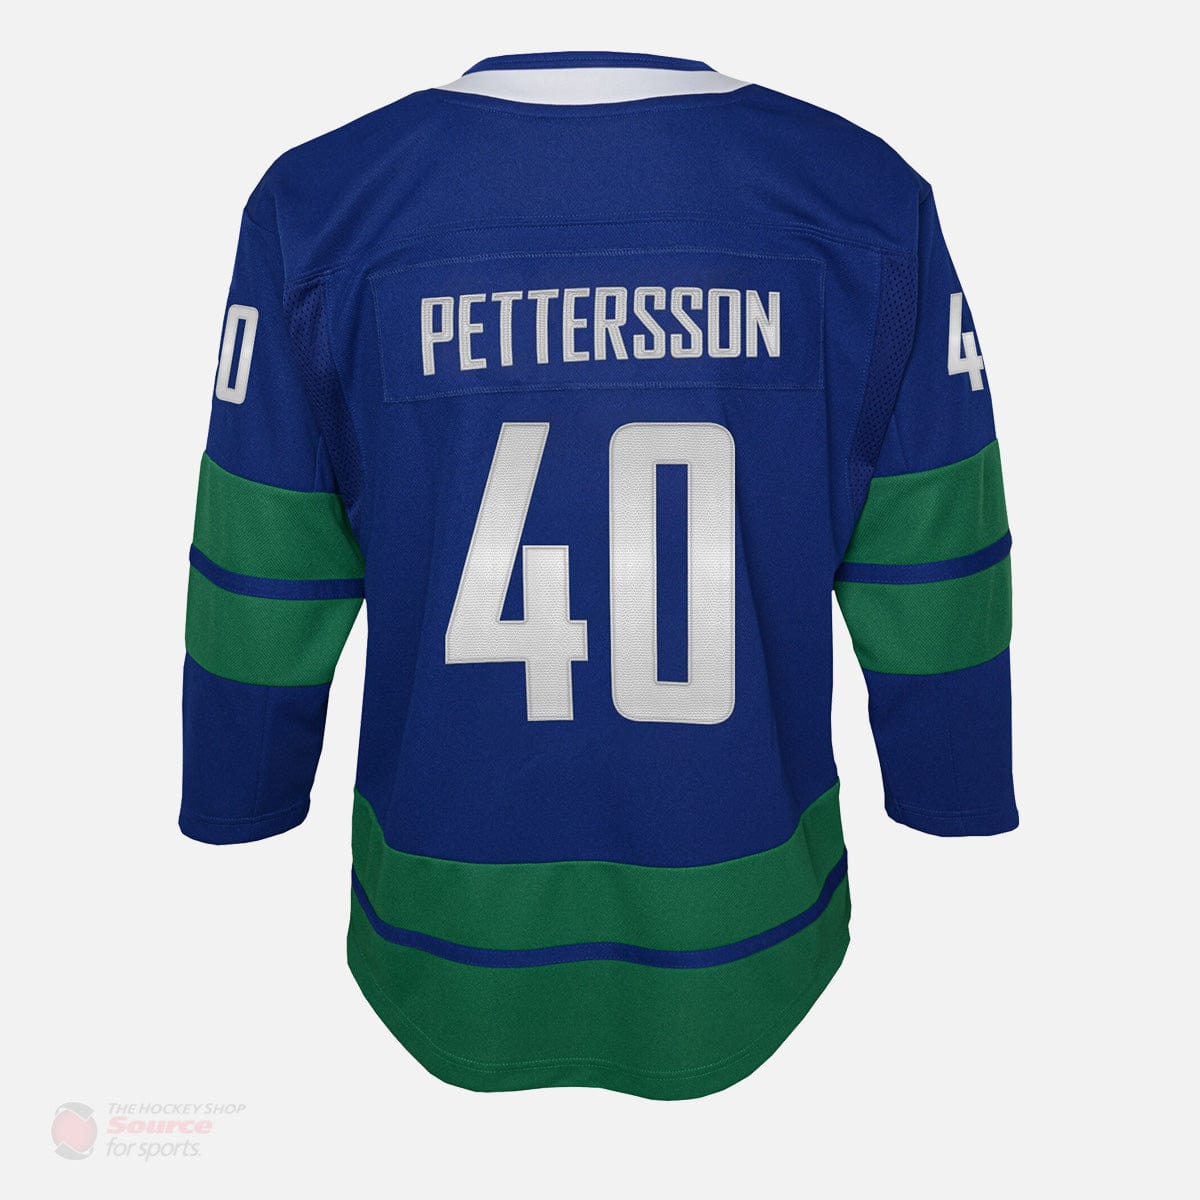 Vancouver Canucks Alternate Outer Stuff Premier Junior Jersey - Elias Pettersson